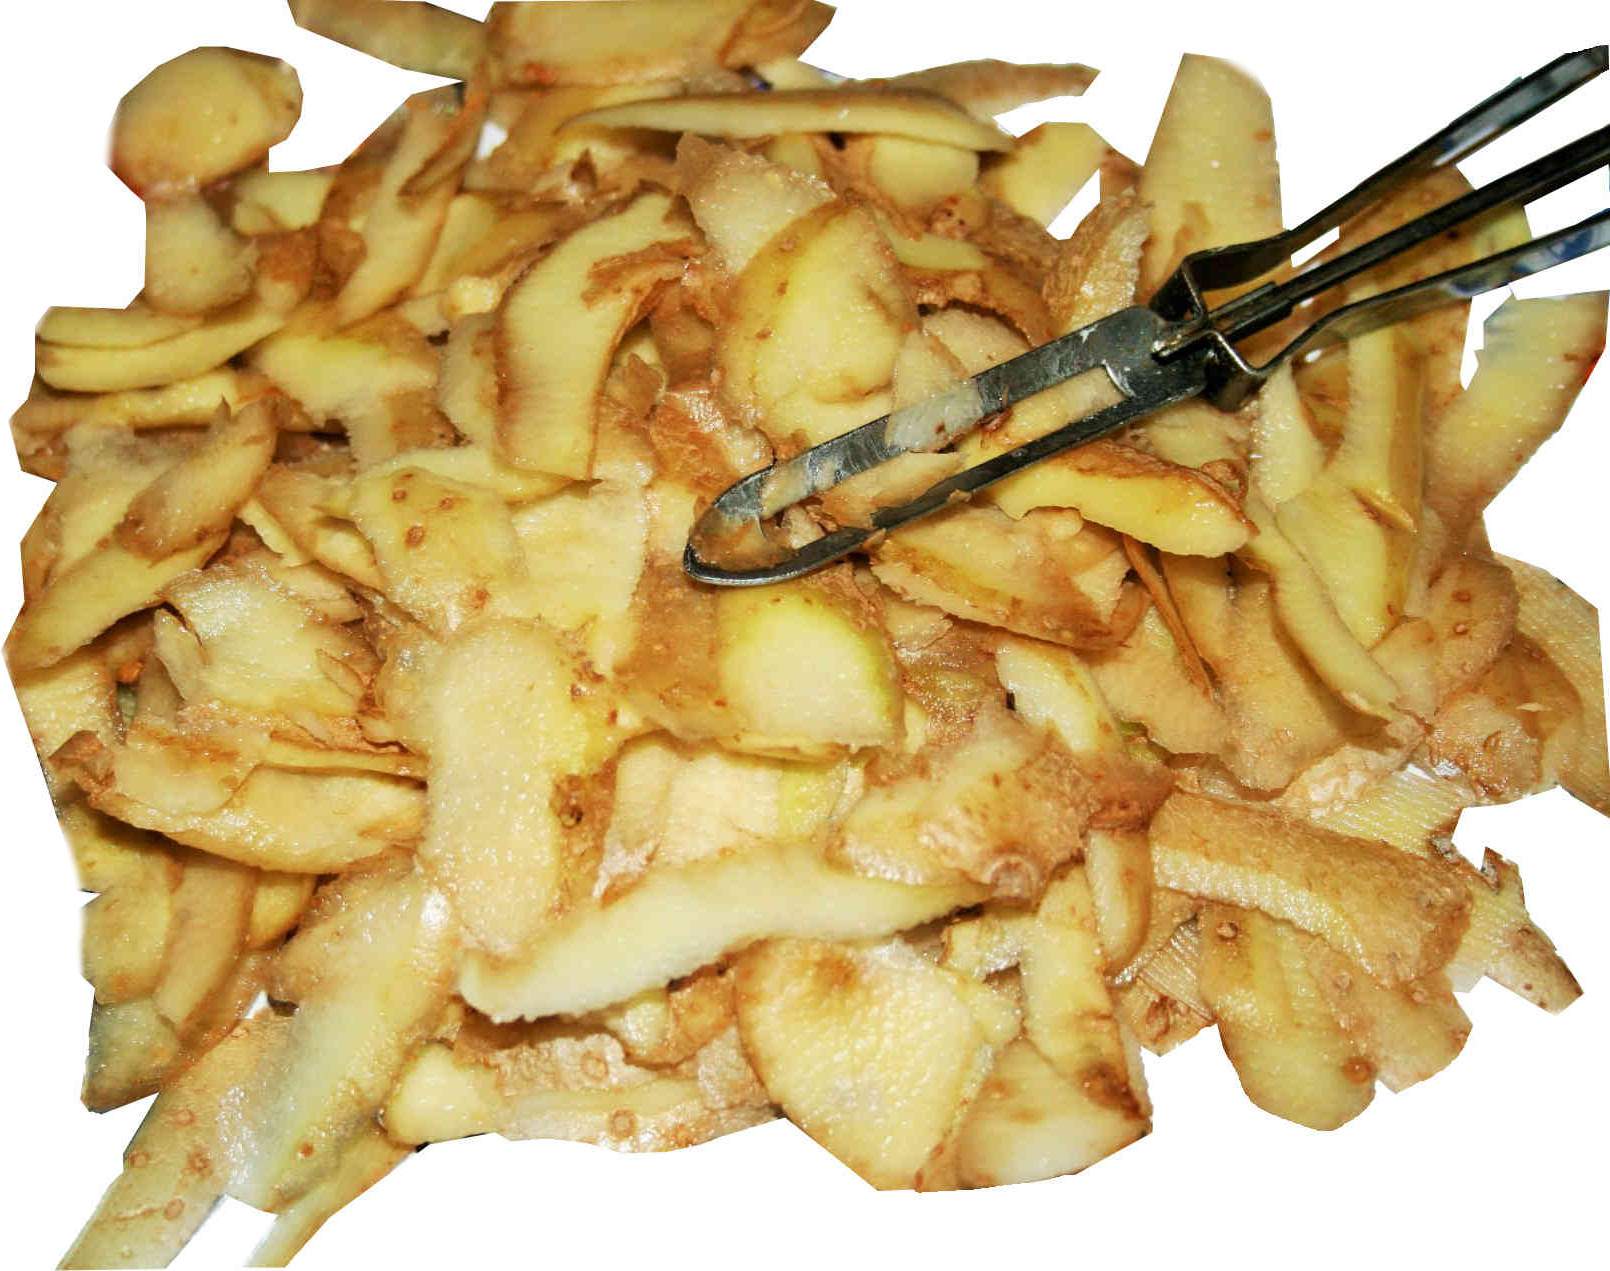 La recette de patates frites de cantine parfaite et facile à préparer!